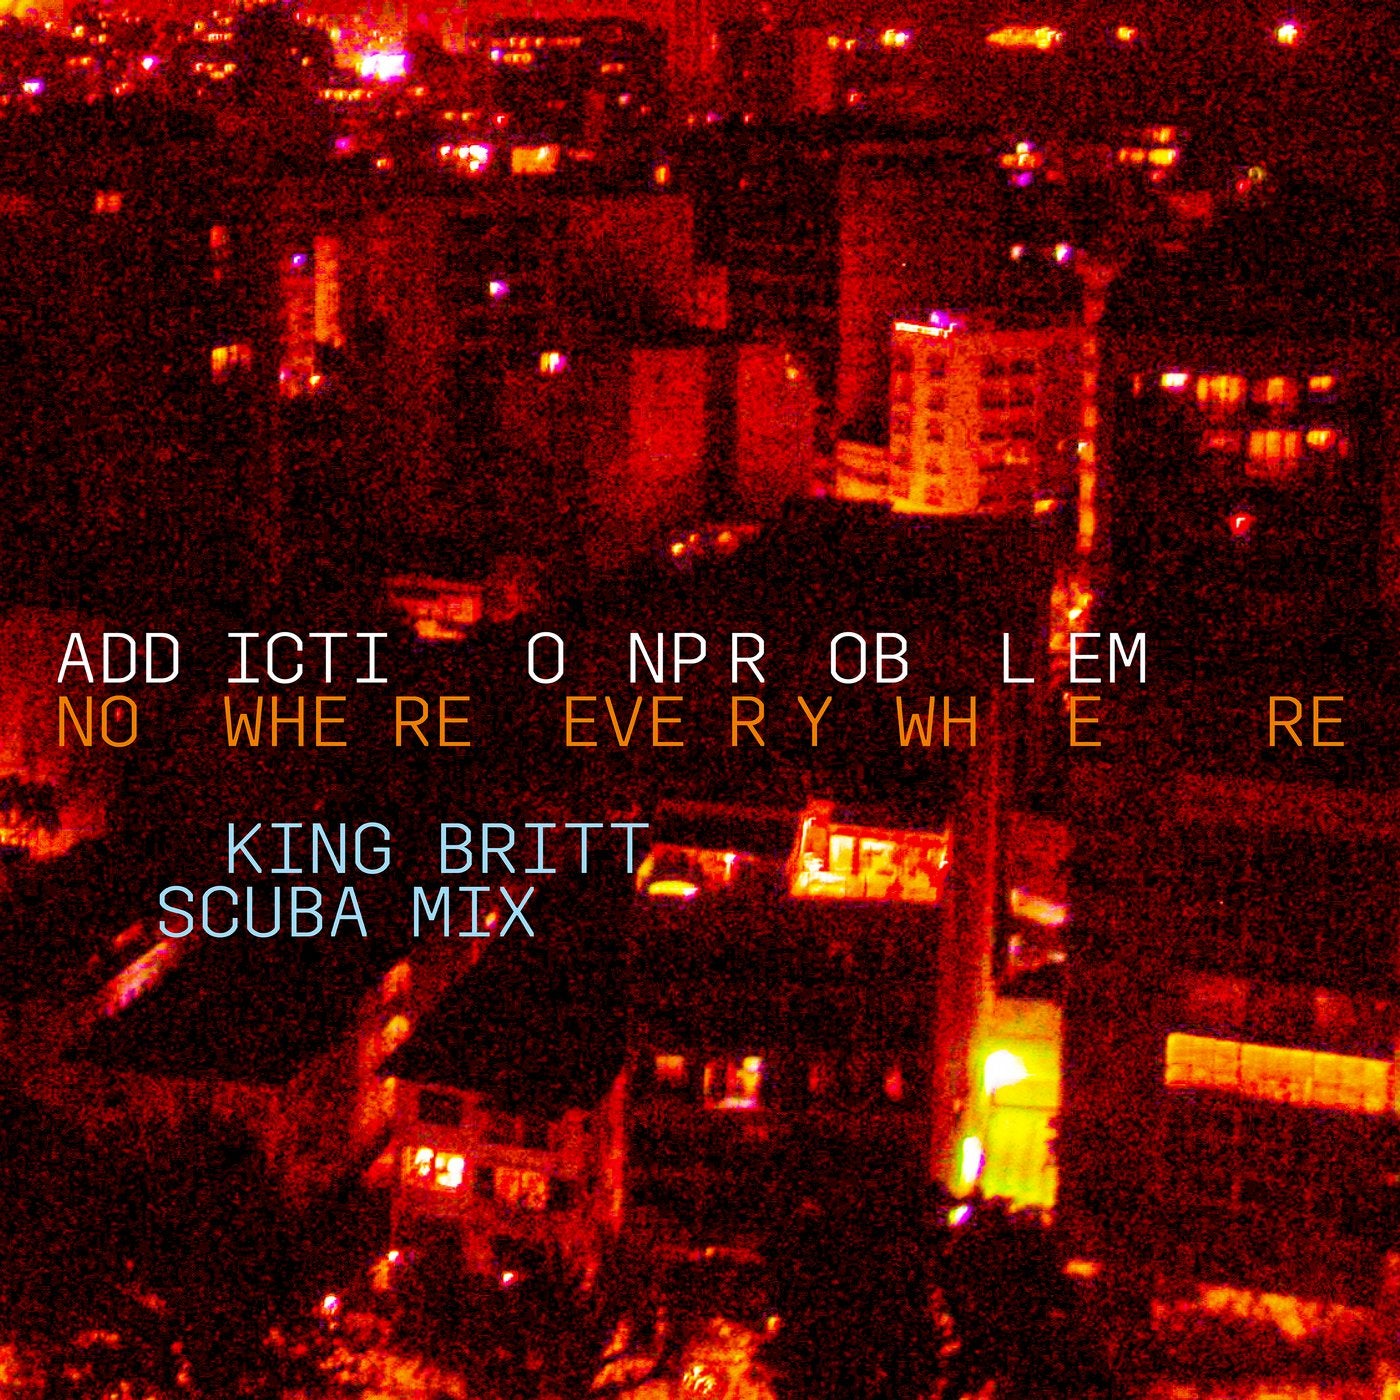 Nowhere (Everywhere Version: King Britt Scuba Mix) feat. King Britt